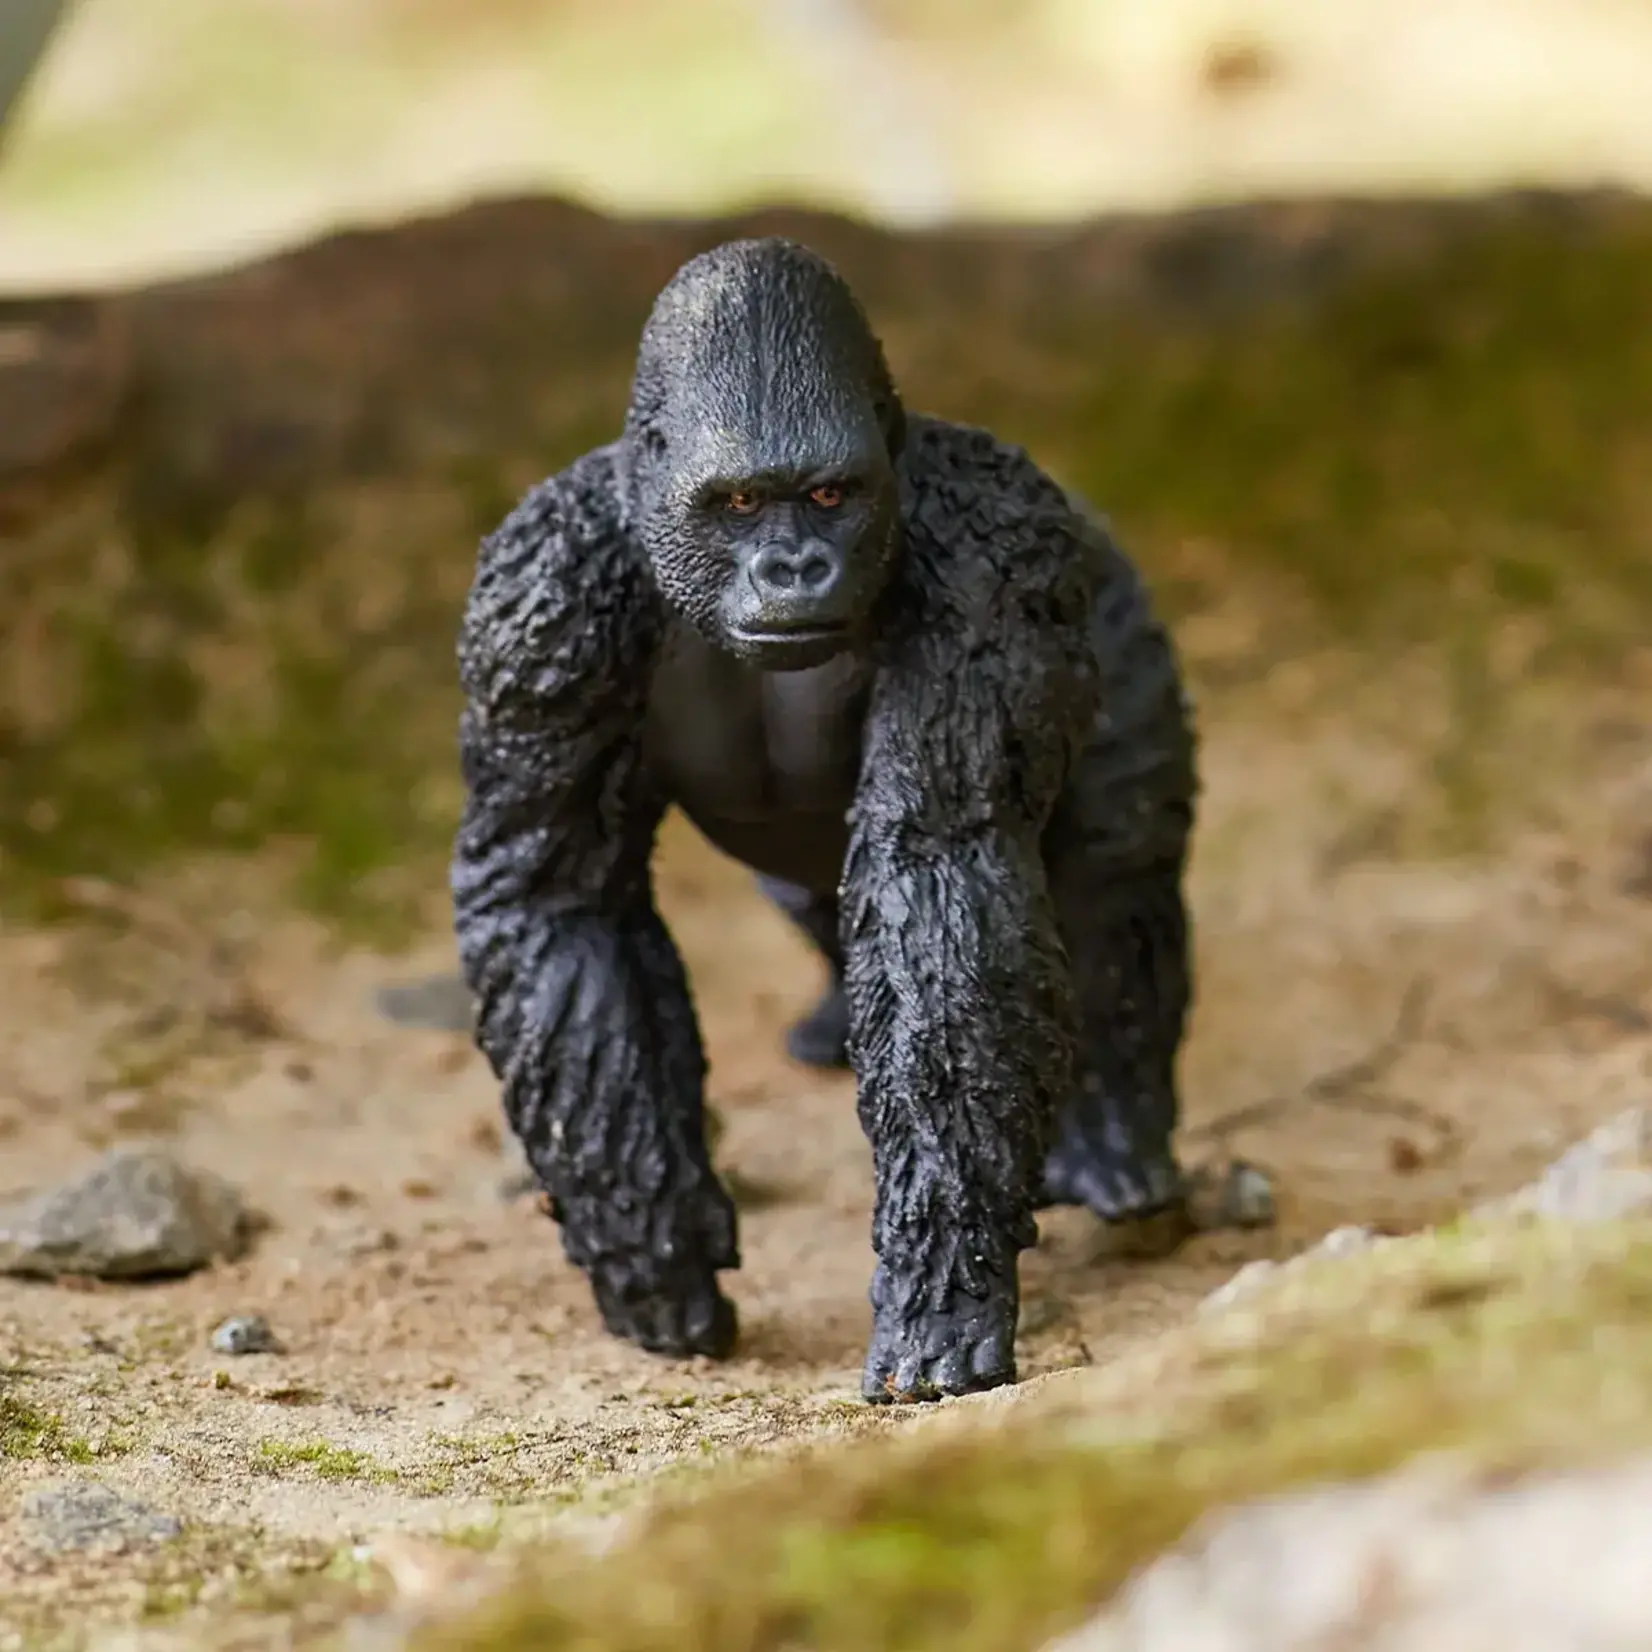 Schleich Gorilla Male Figure